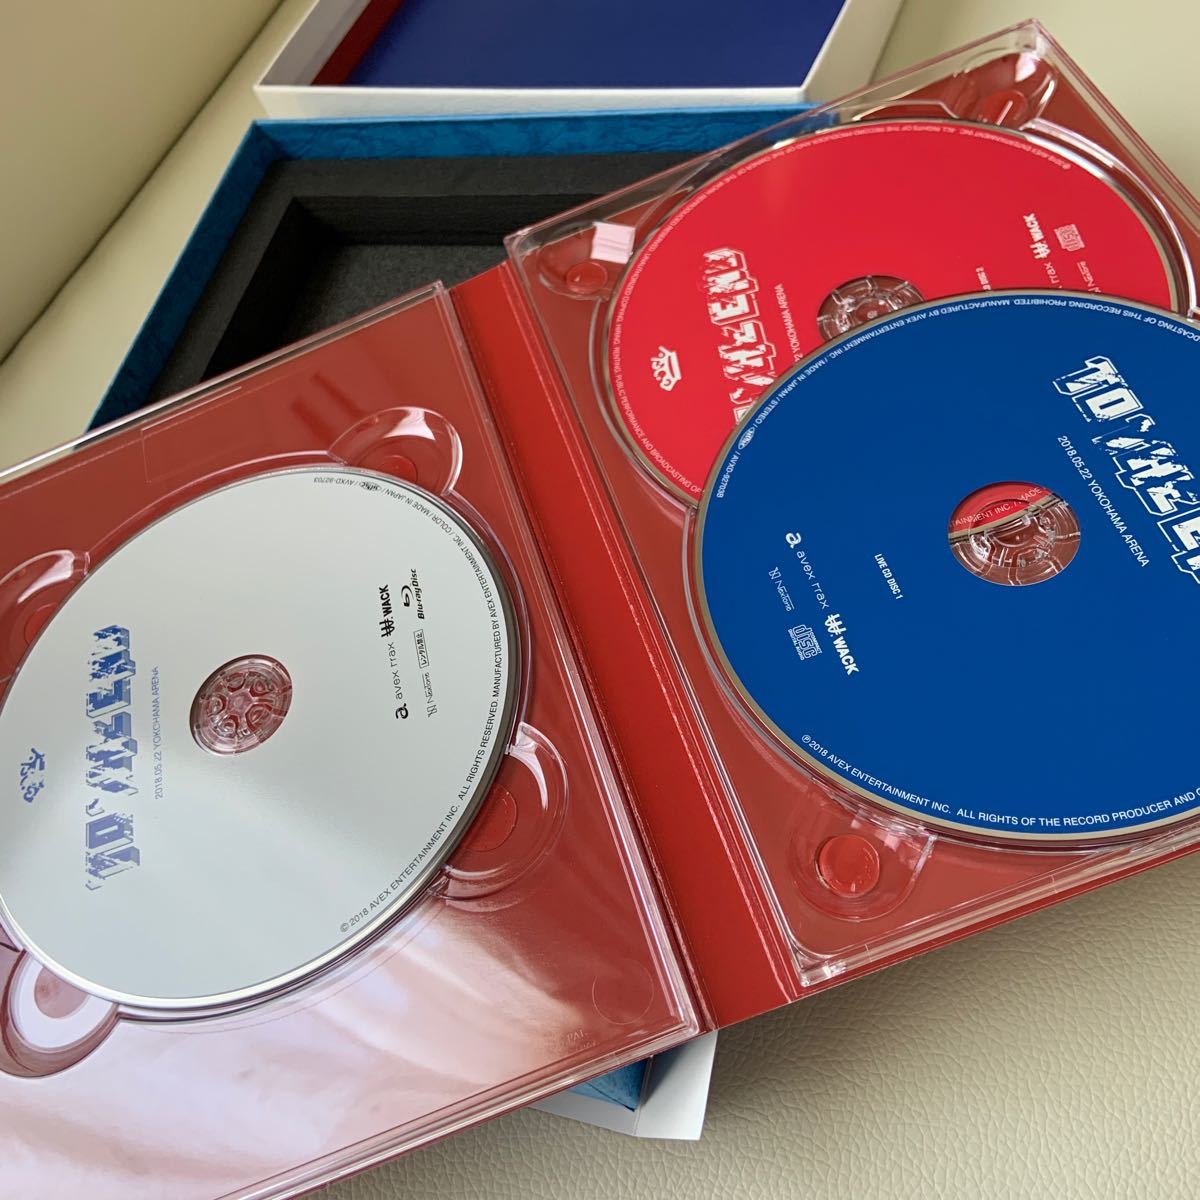 BiSH TO THE END 初回生産限定盤(Blu-ray Disc+CD2枚組+写真集) 金欠の 